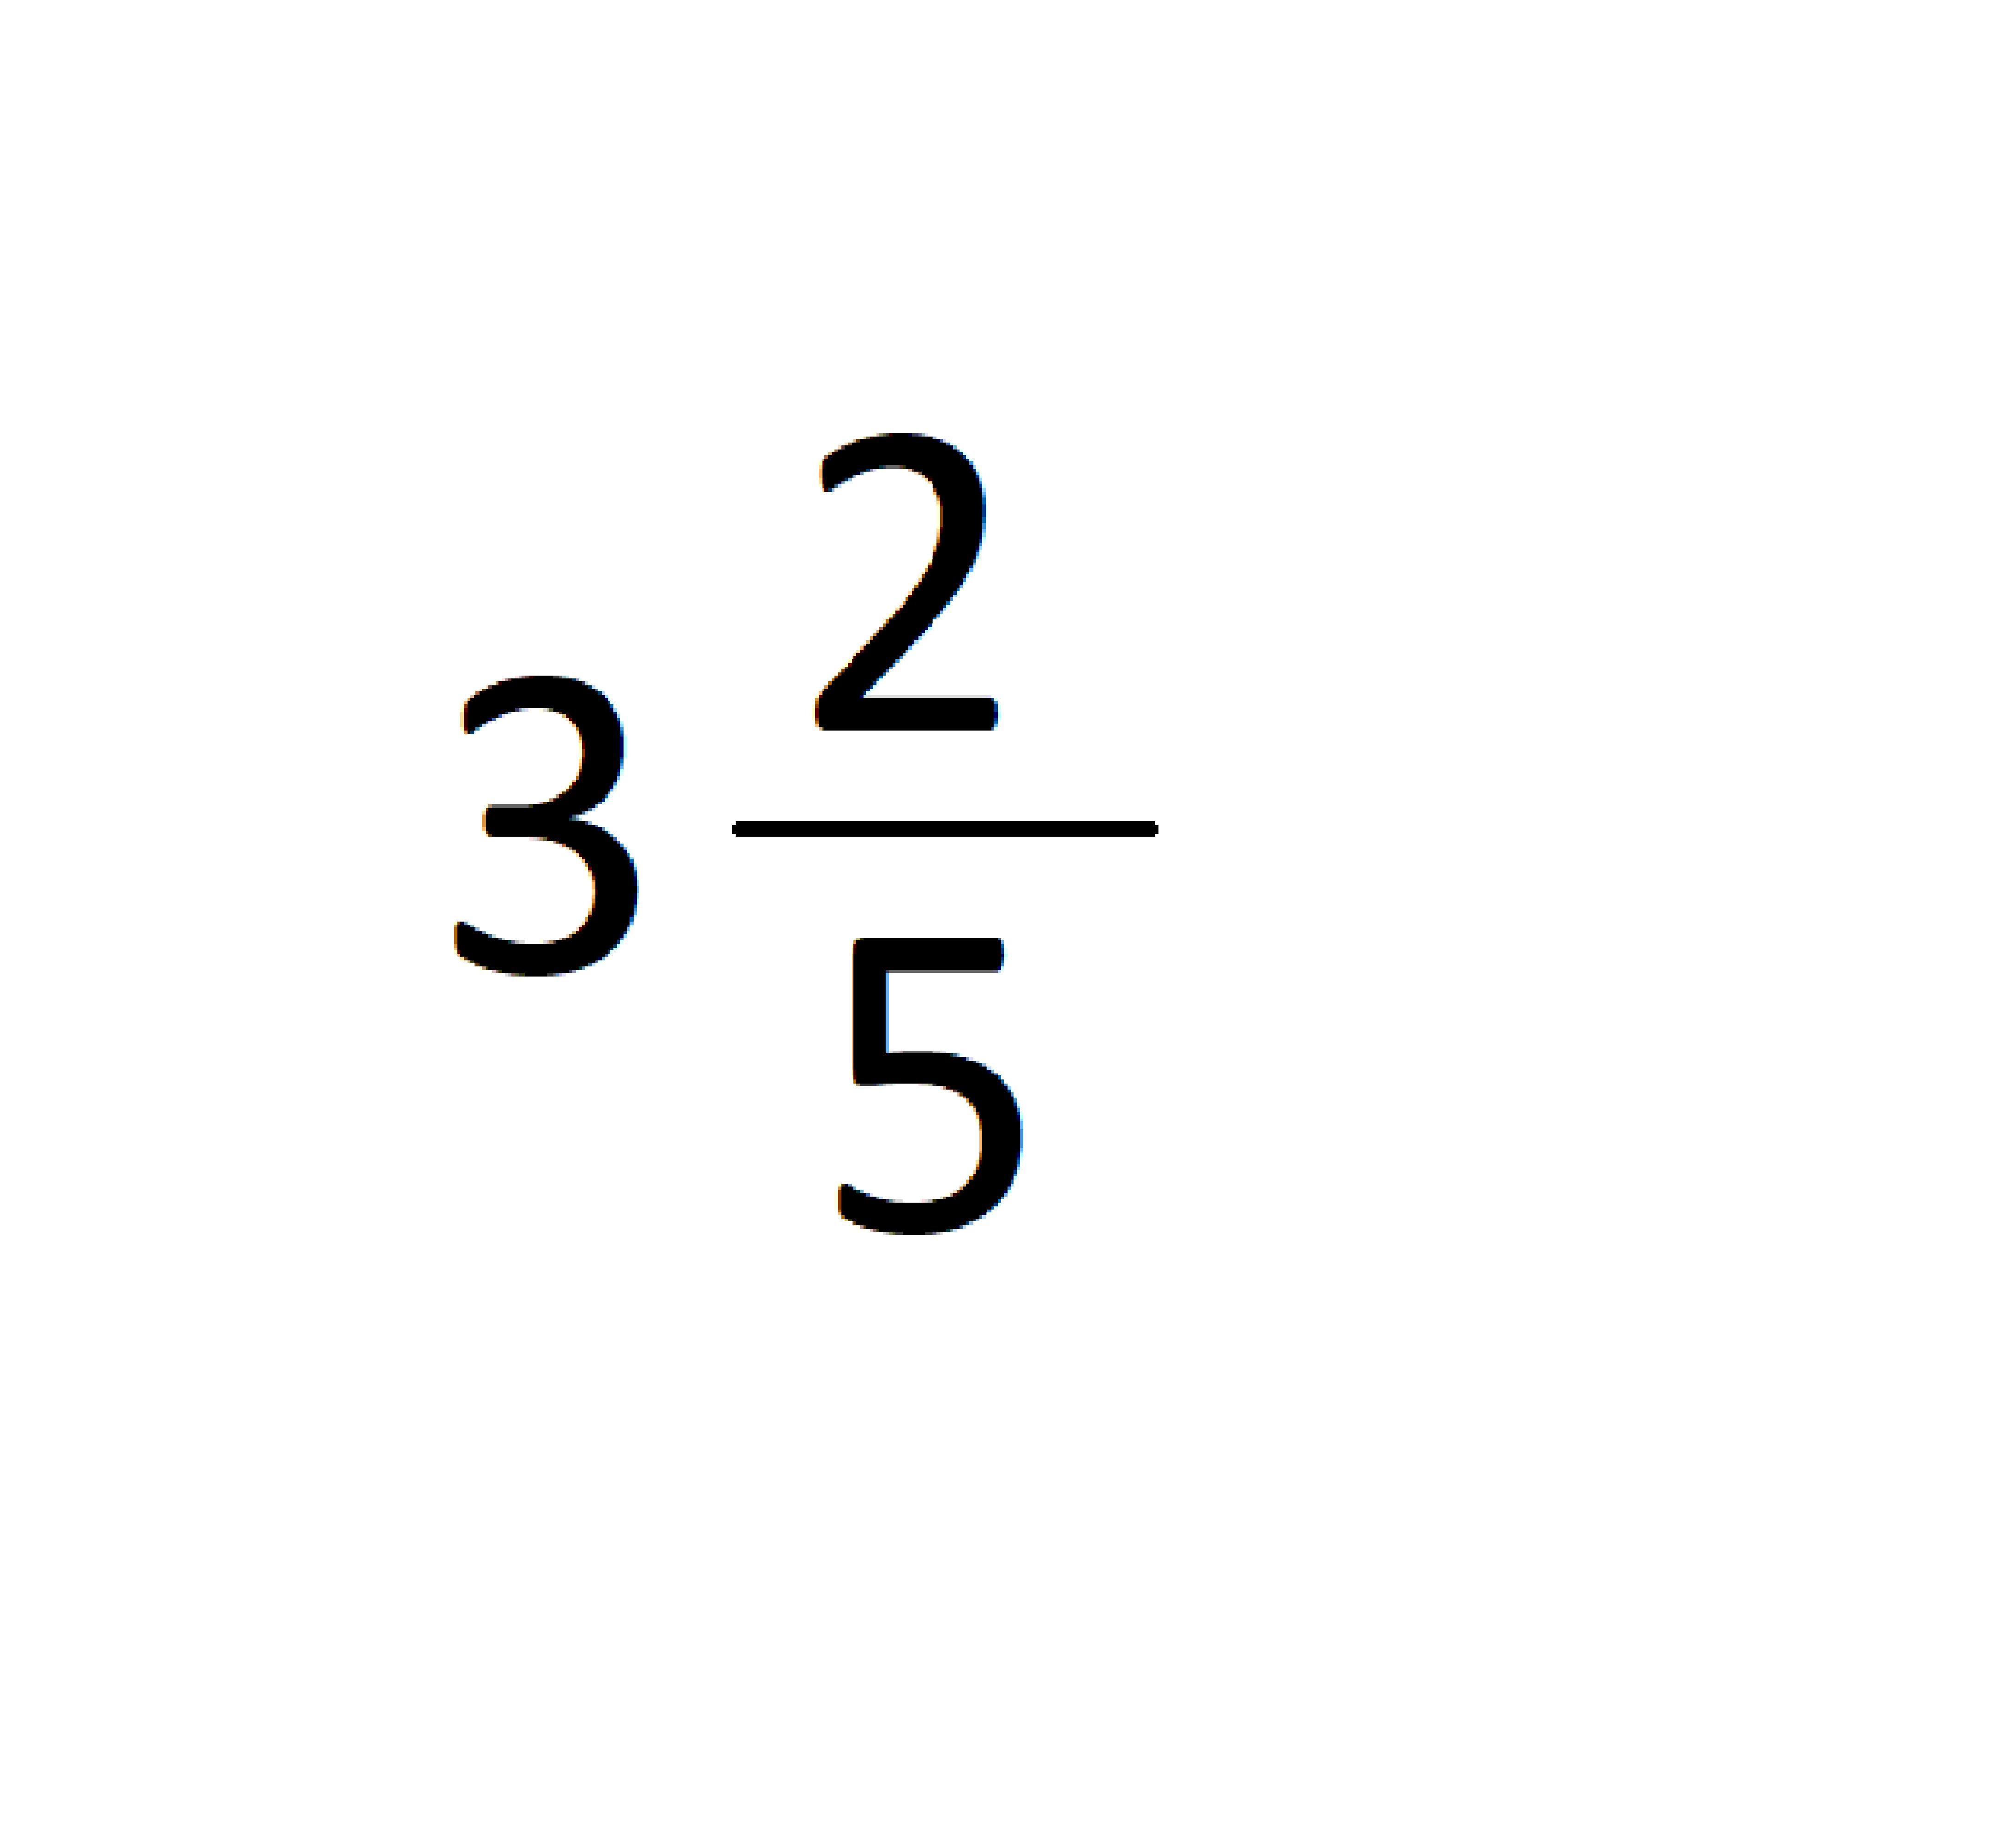 Значение выражения 11 3 2 611. Целая часть дроби 17/5. Запишите в виде смешанного числа значение выражения 9/5+4/5. Запишите в виде смешанного числа значение выражения 11/5+8/5. Представьте в виде смешанного числа выражение 11/5+8/5.